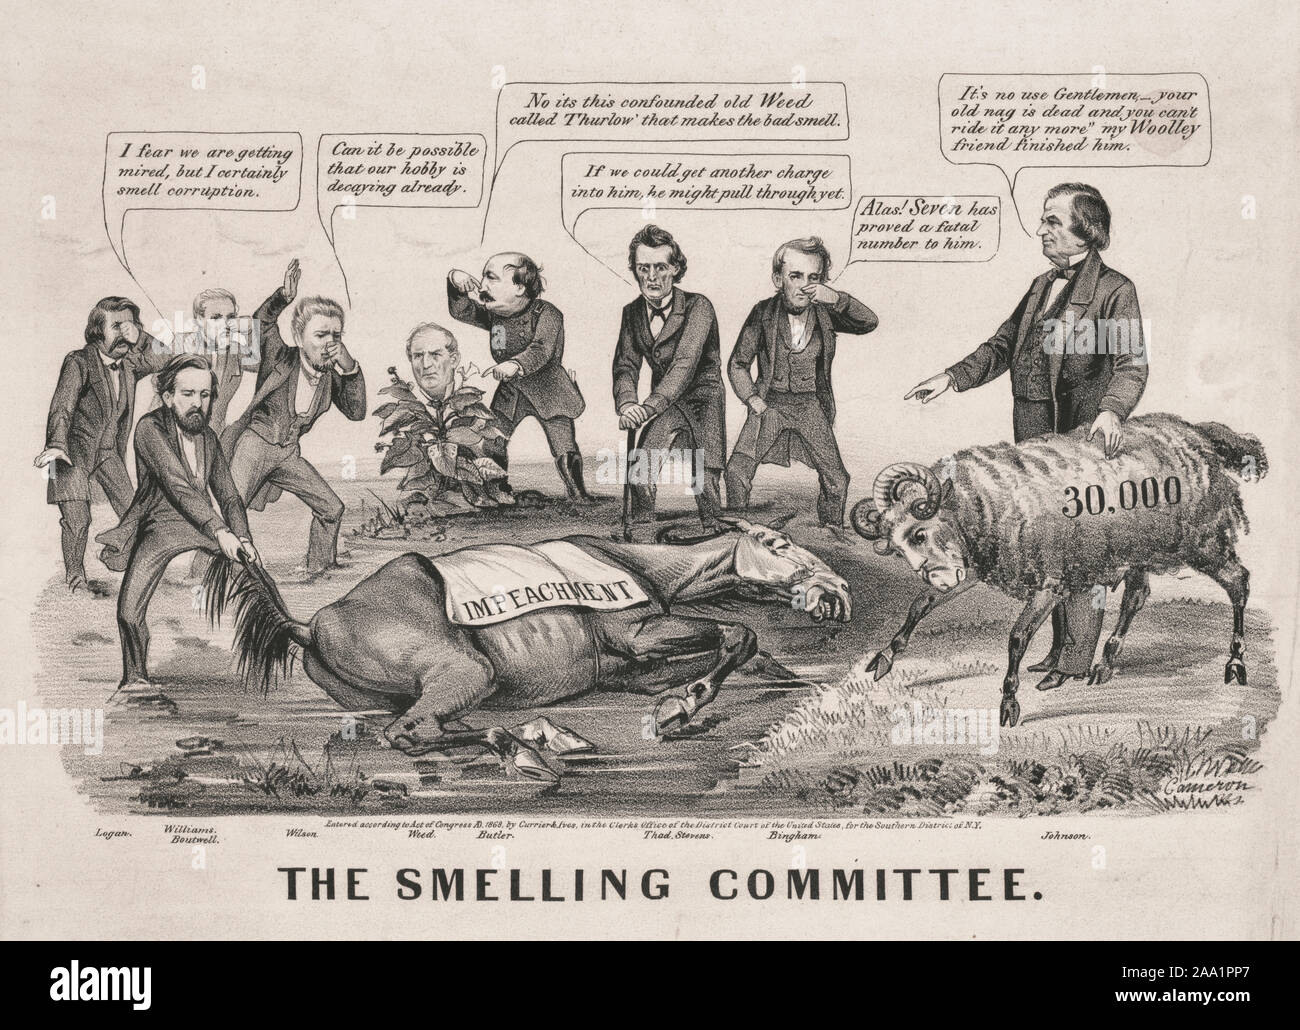 L'odore di comitato - Il mancato impeachment procedimenti avviati dal radicale repubblicani contro il Presidente Andrew Johnson nel 1868 sono paragonati a un cavallo morto: emanando un gran fetore con alcuna speranza per la rinascita. Nelle varie figure coinvolte nell'impeachment procedimento circondano il marciume la carcassa di un cavallo avvolto in una coperta "impeachment", tenendo i loro nasi da l'odore. Gli uomini sono (da sinistra a destra) John A. Logan, George S. Boutwell, Thomas Williams, Benjamin F. Butler, Thaddeus Stevens e John A. Bingham. Boutwell tira la coda di cavallo, dicendo: "Temo che stiamo ottenendo mir Foto Stock